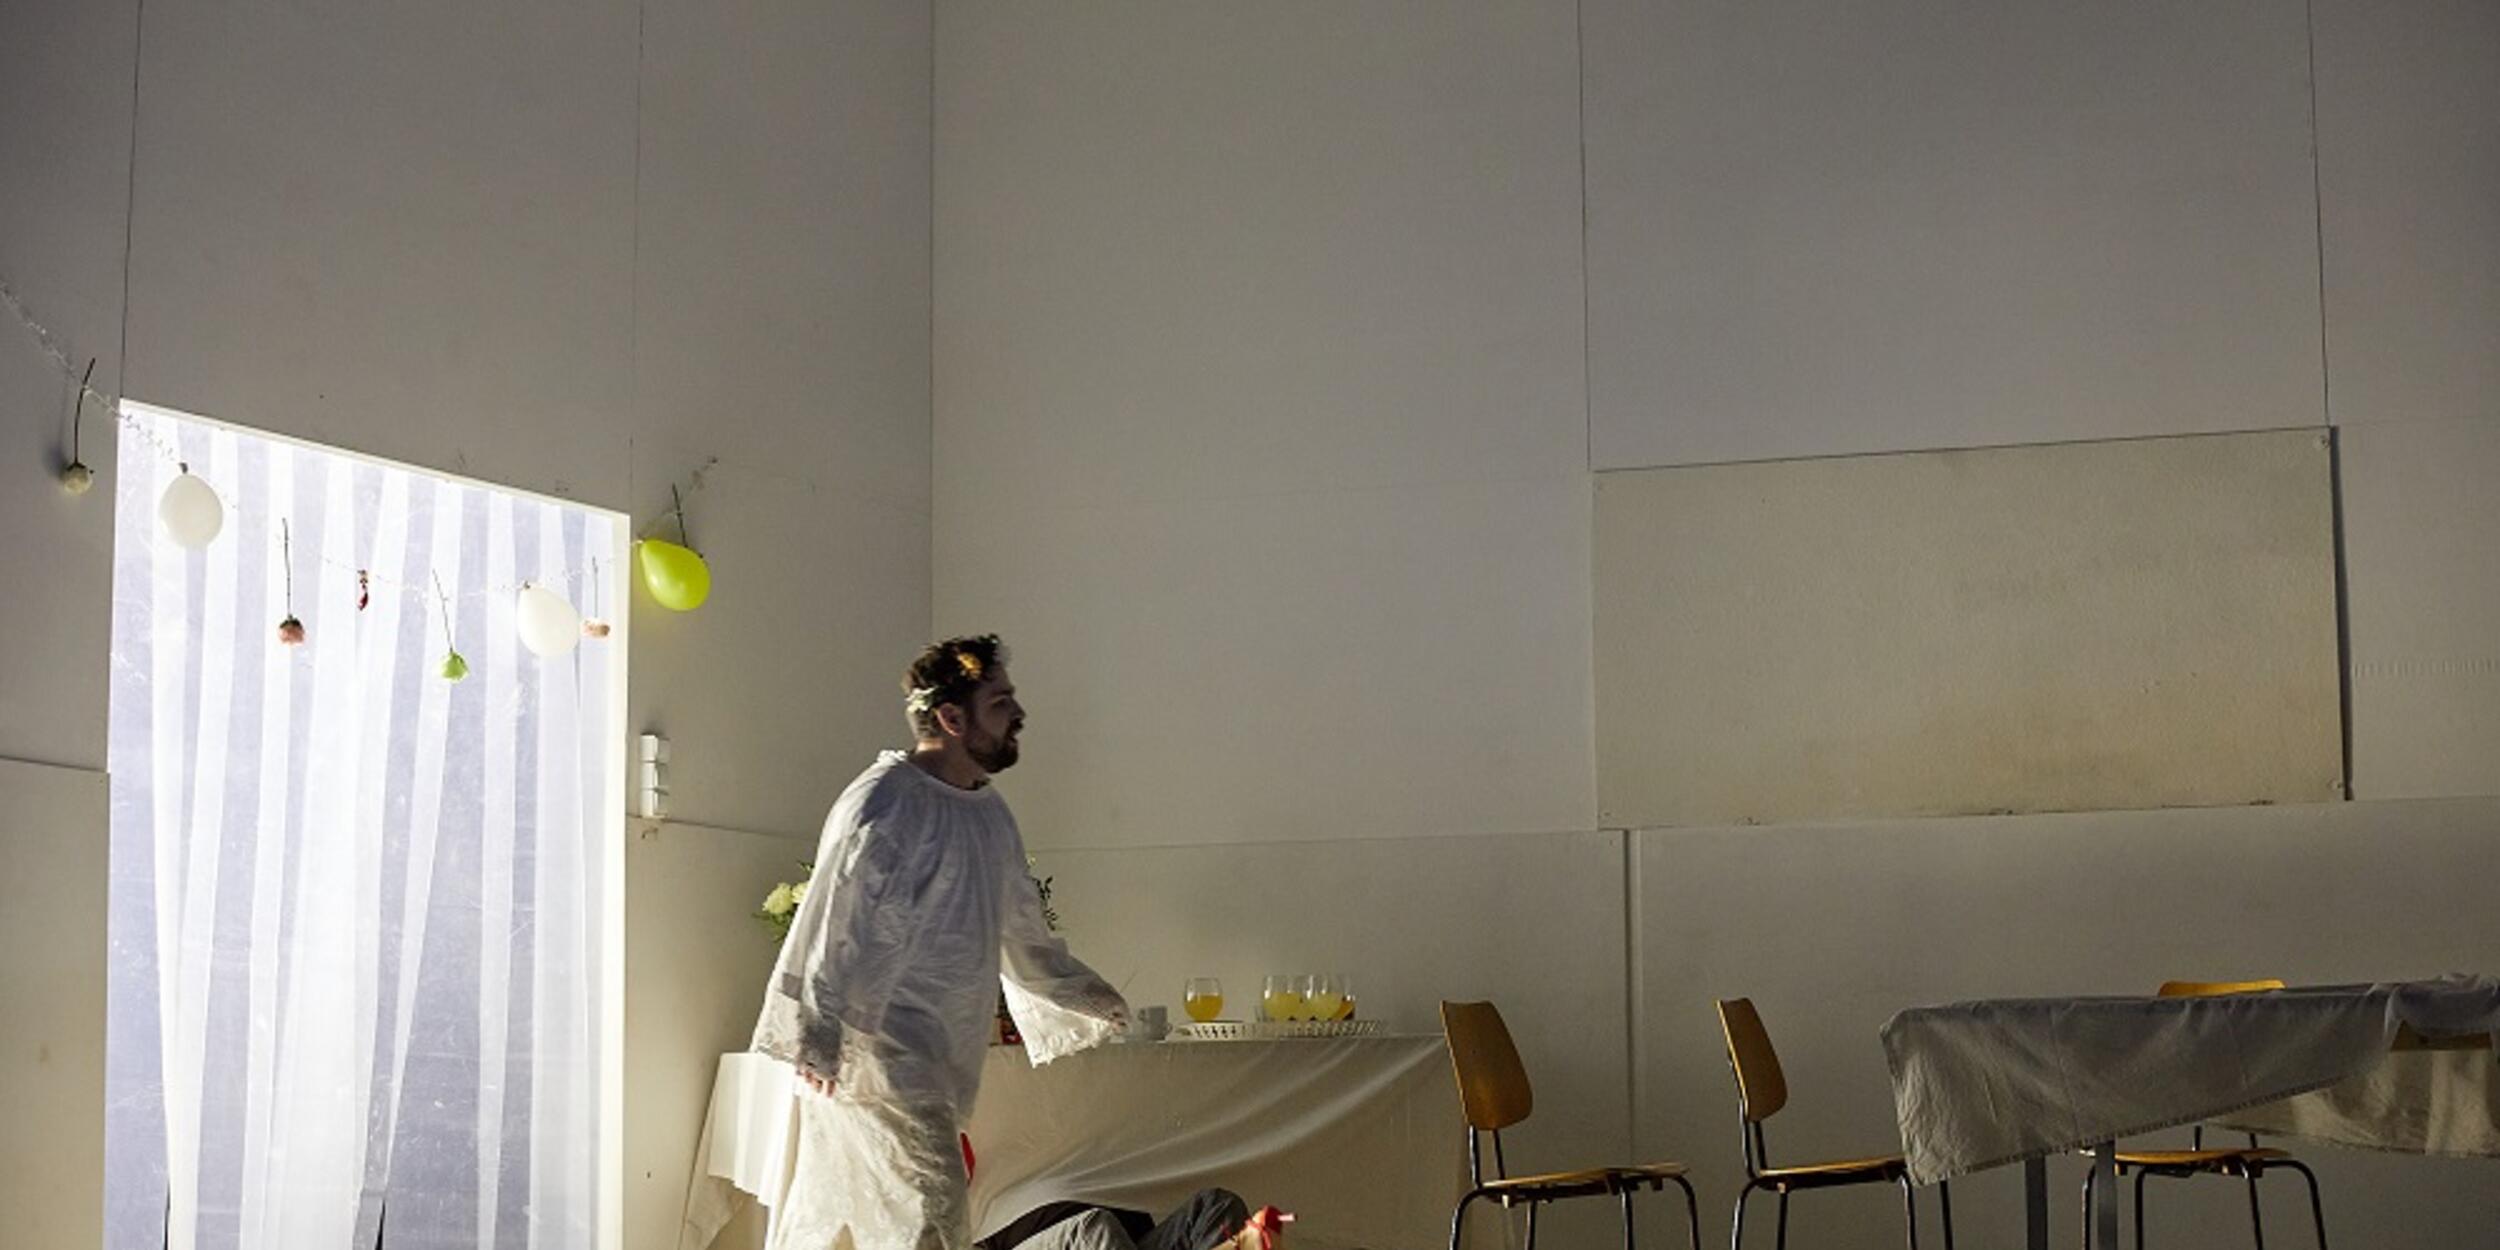 Mann in weißer Schutzkleidung geht über eine Bühne | © Judith Buss